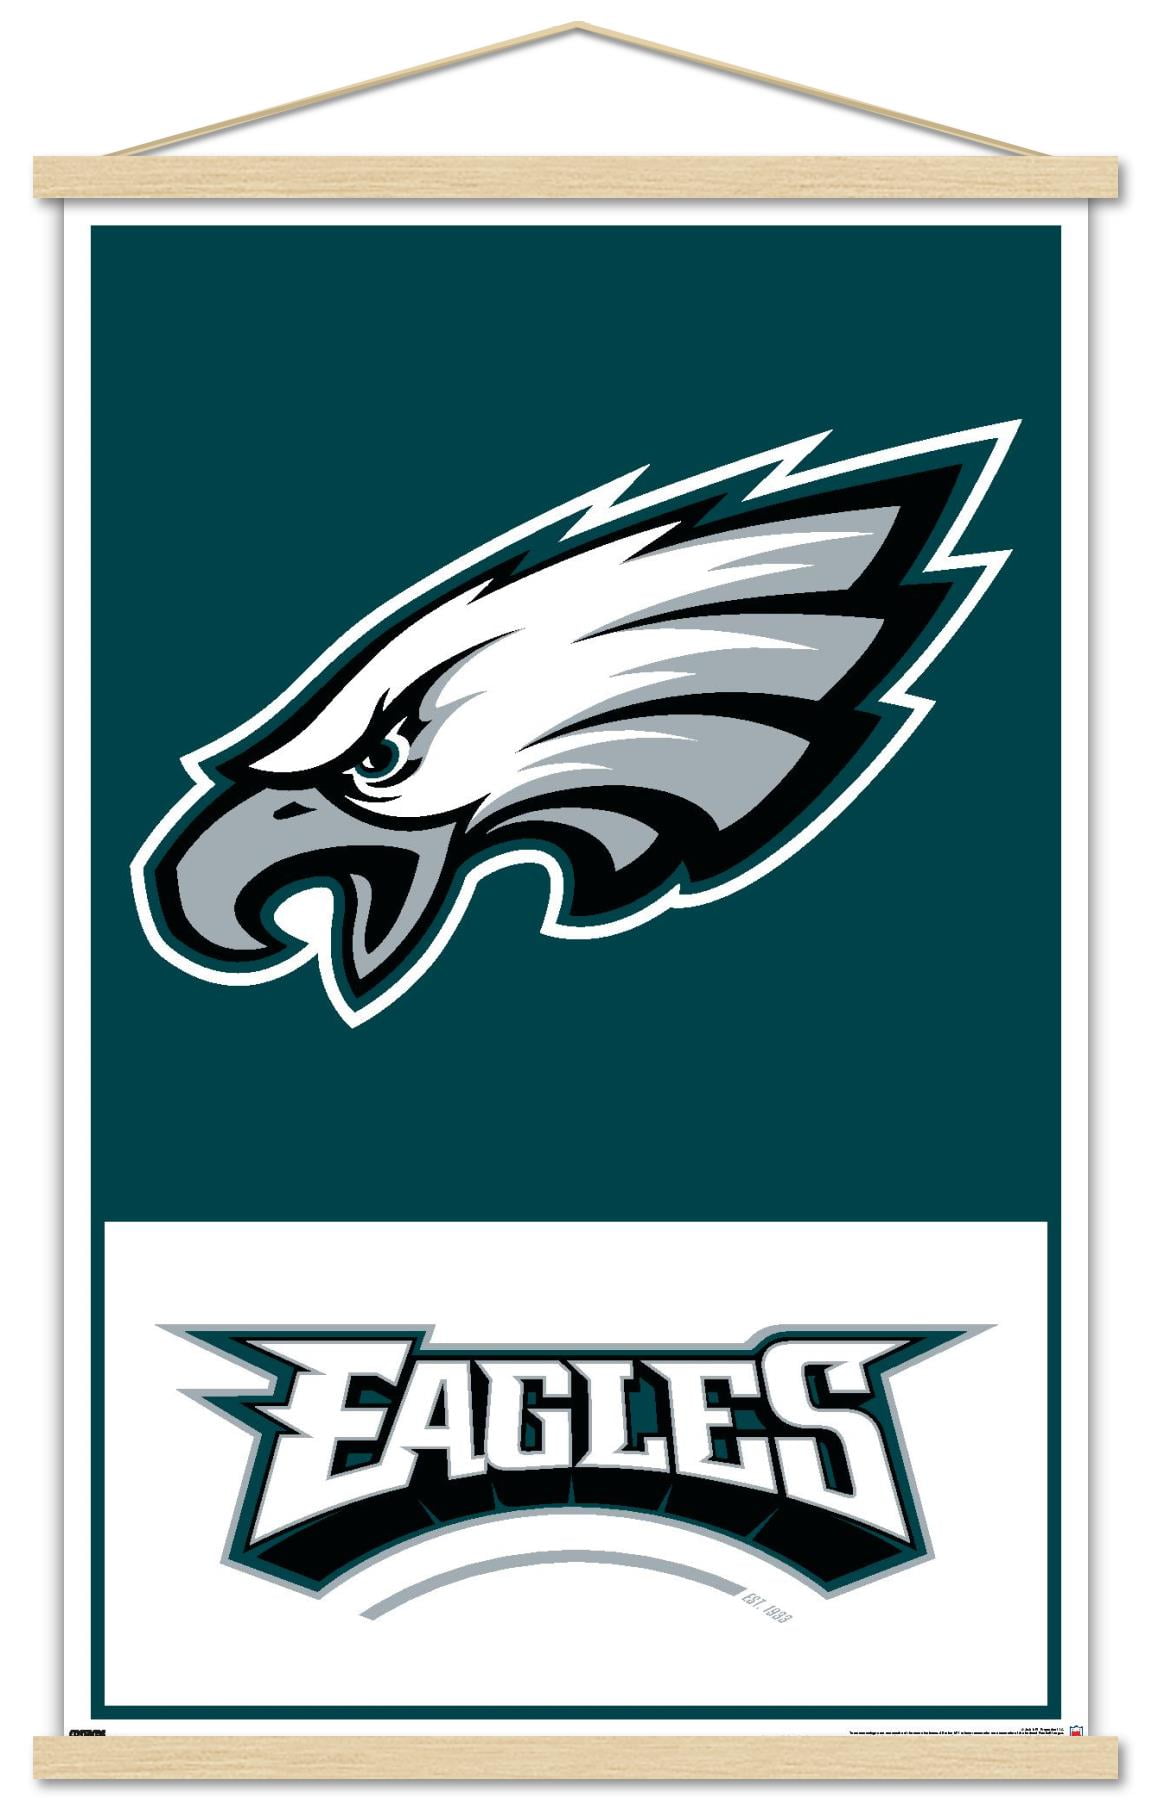 NFL Philadelphia Eagles - Logo 21 Wall Poster, 22.375 x 34, Framed 